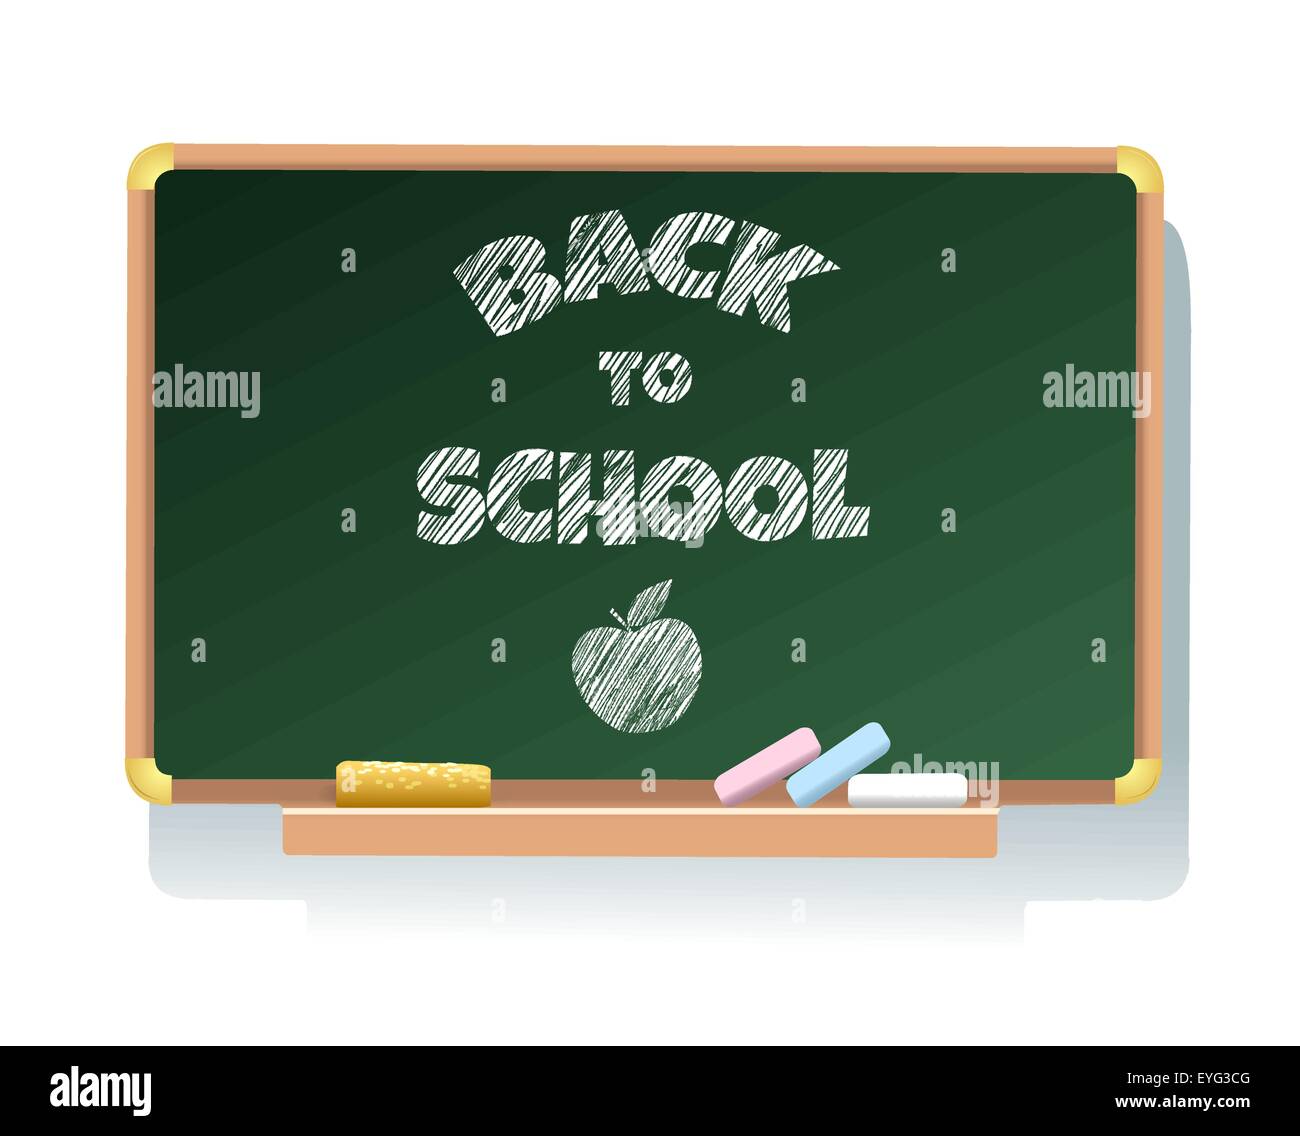 Tableau de classe avec lettrage Retour à l'école et signe d'Apple. Illustration de Vecteur